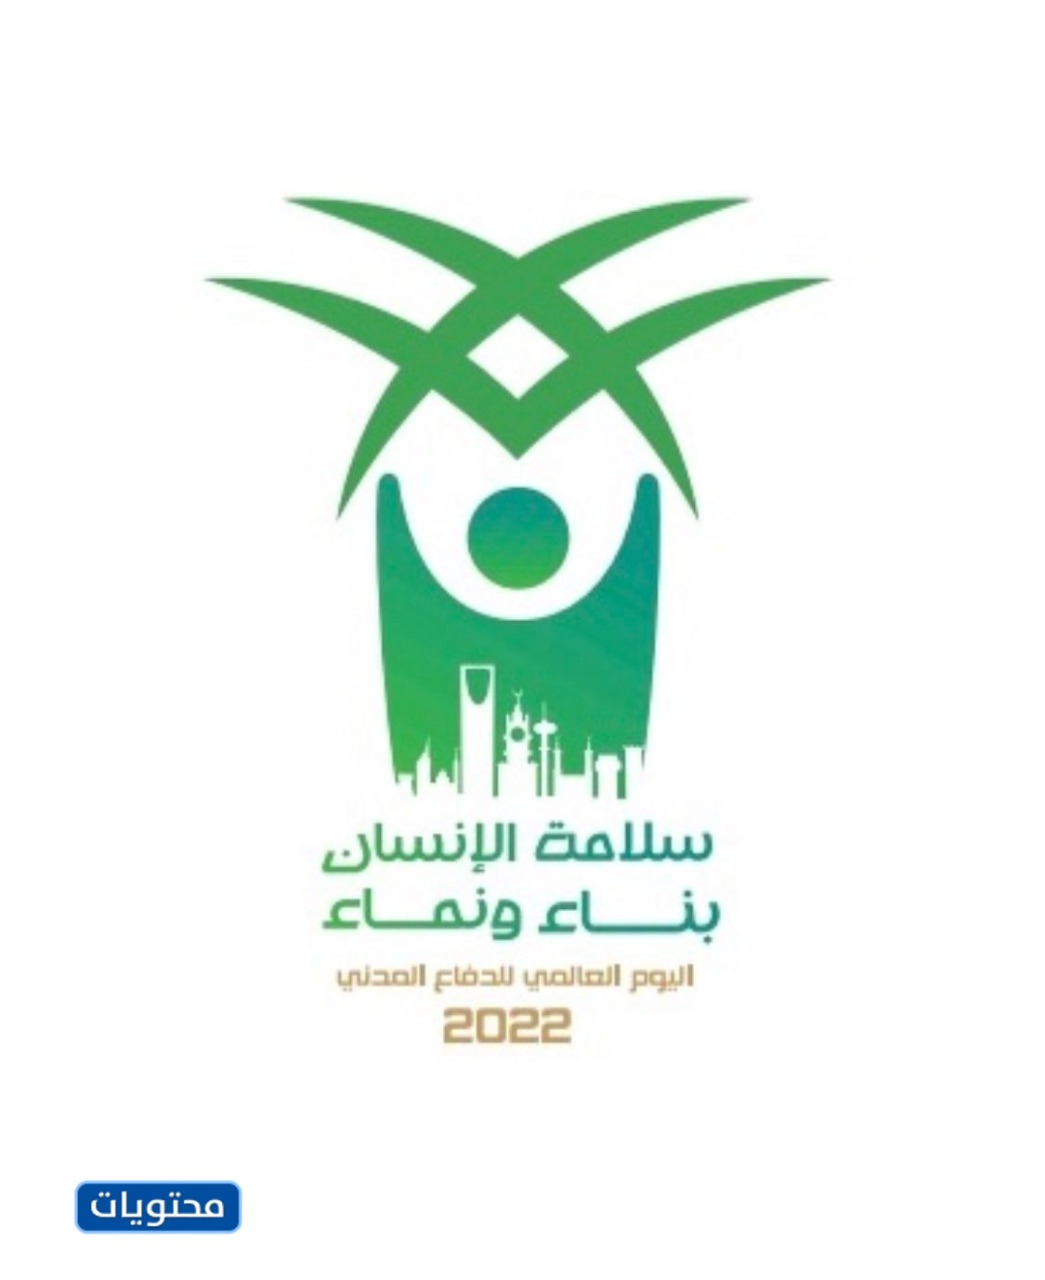 صورة شعار اليوم العالمي للدفاع المدني